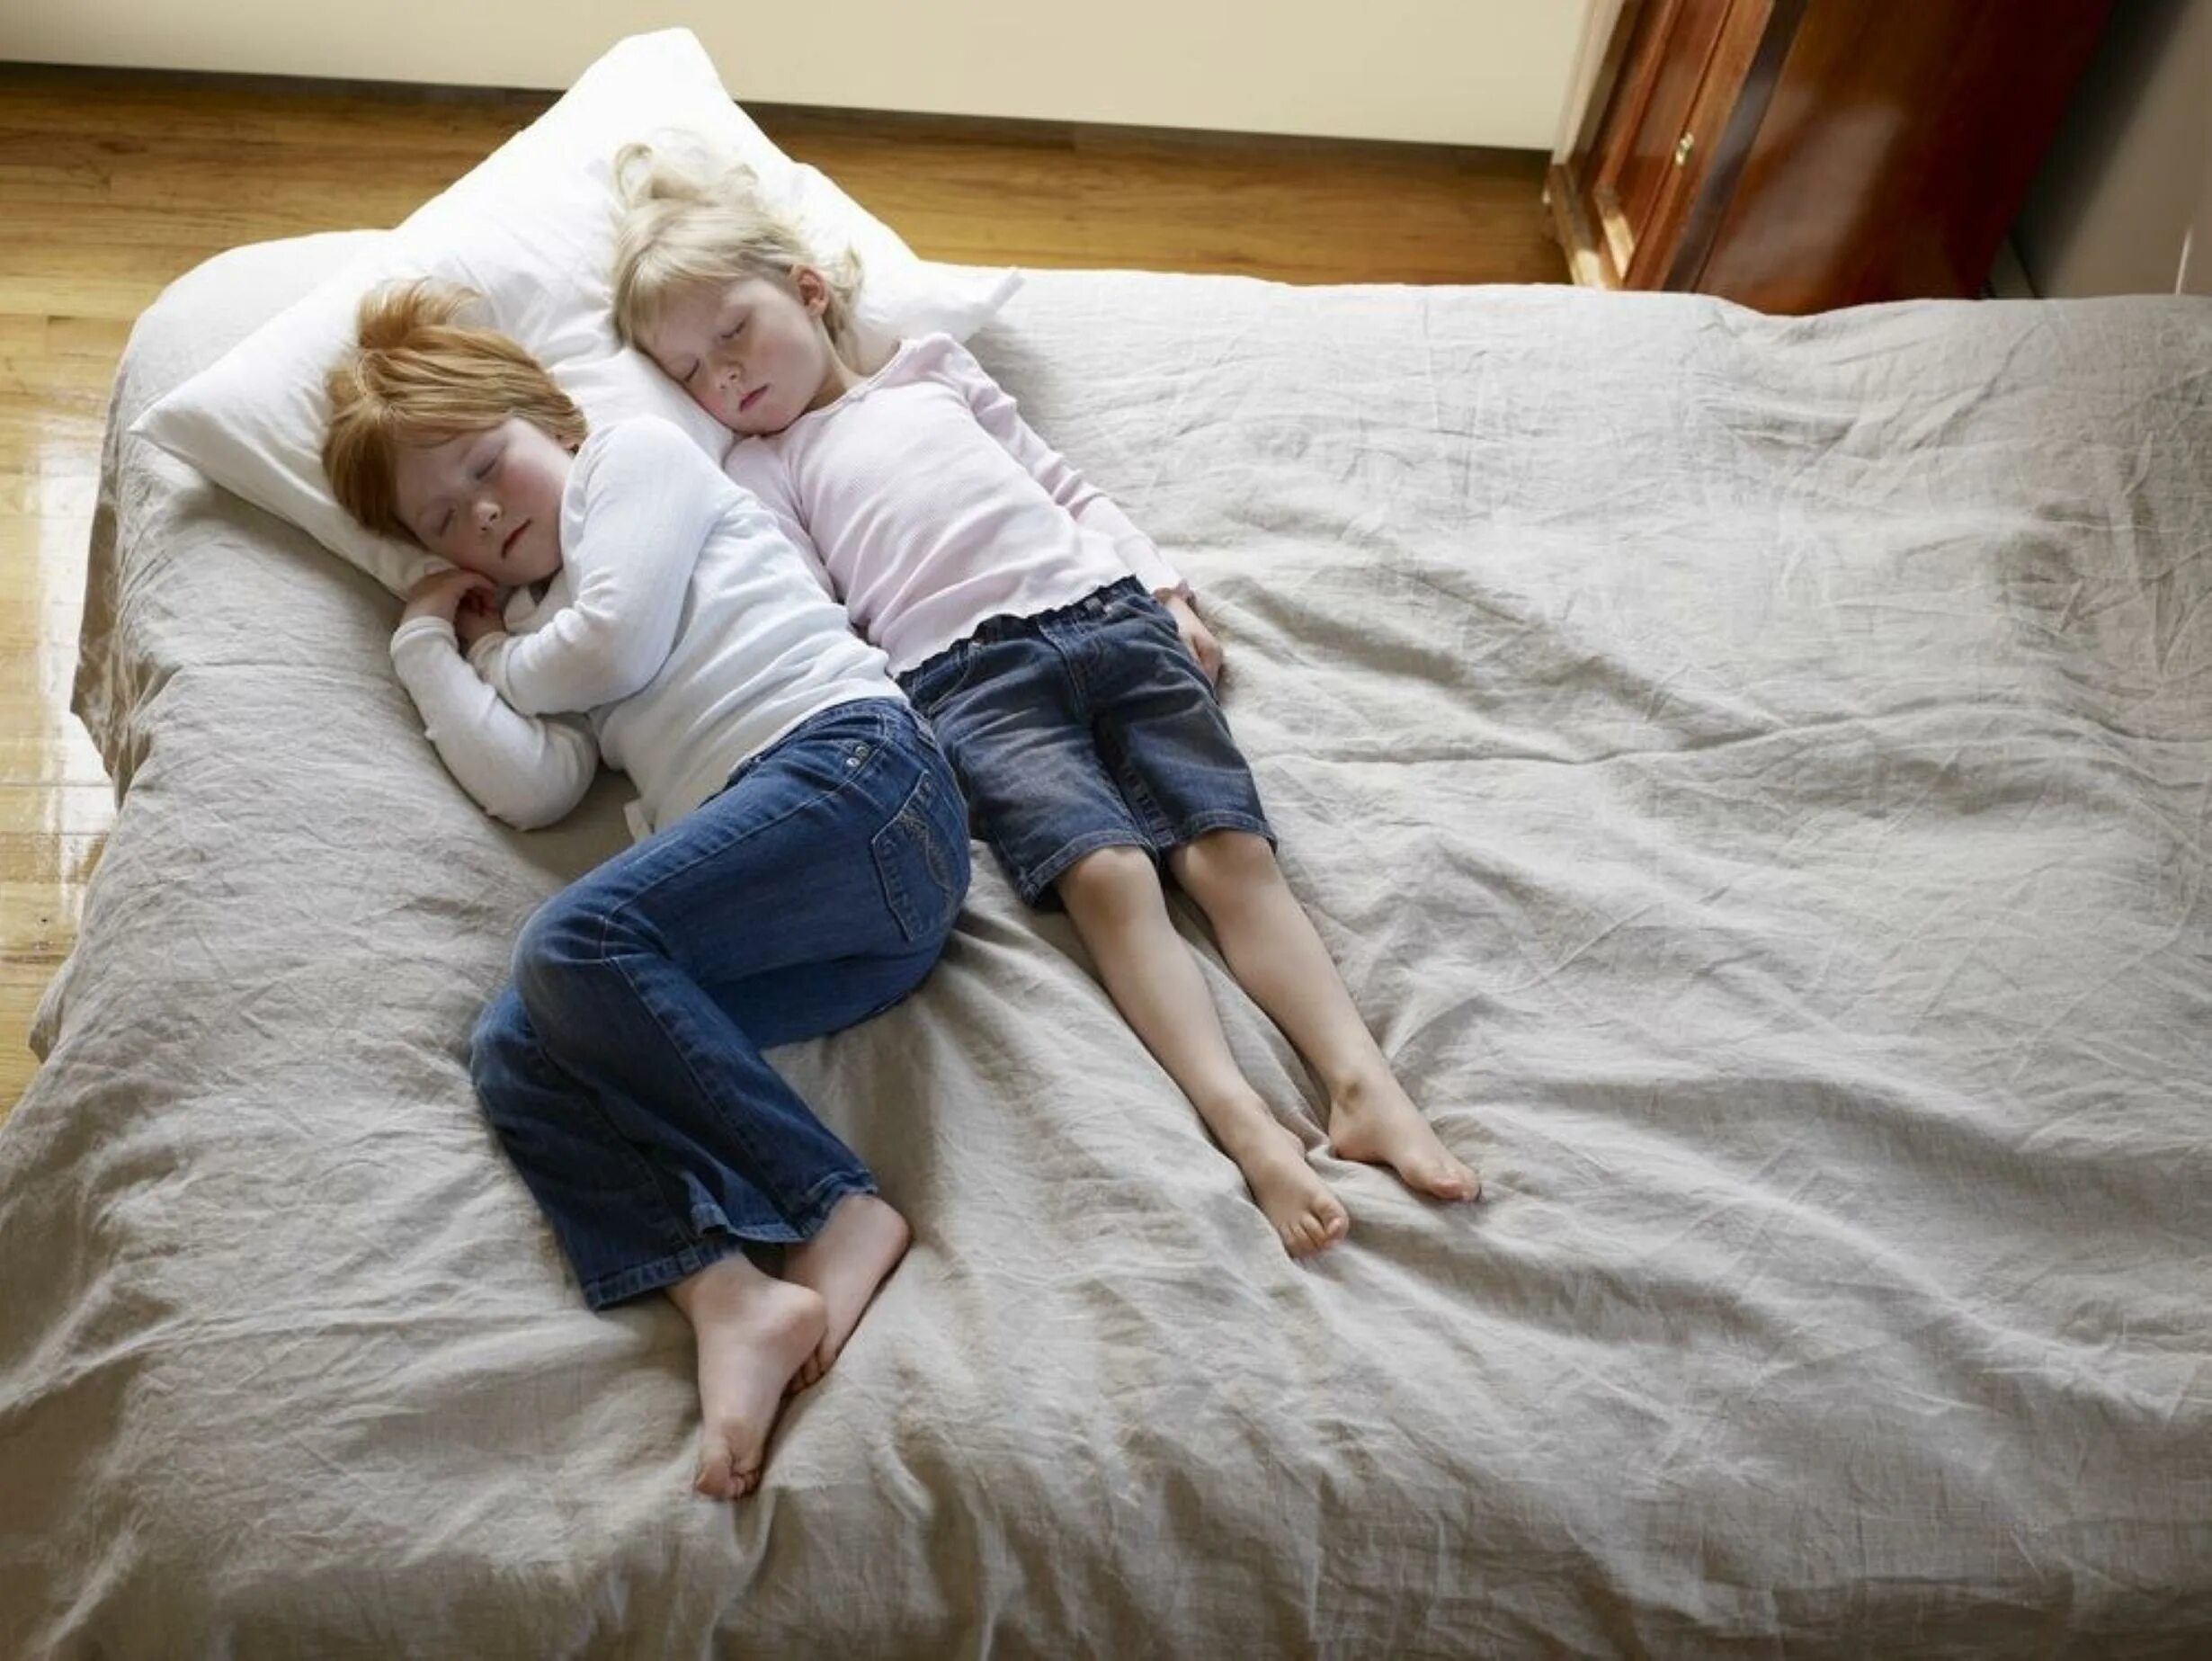 Связанные дети на кровати. Ребенок лежит на кровати. Спящие сестры. Ролики спящие сестры